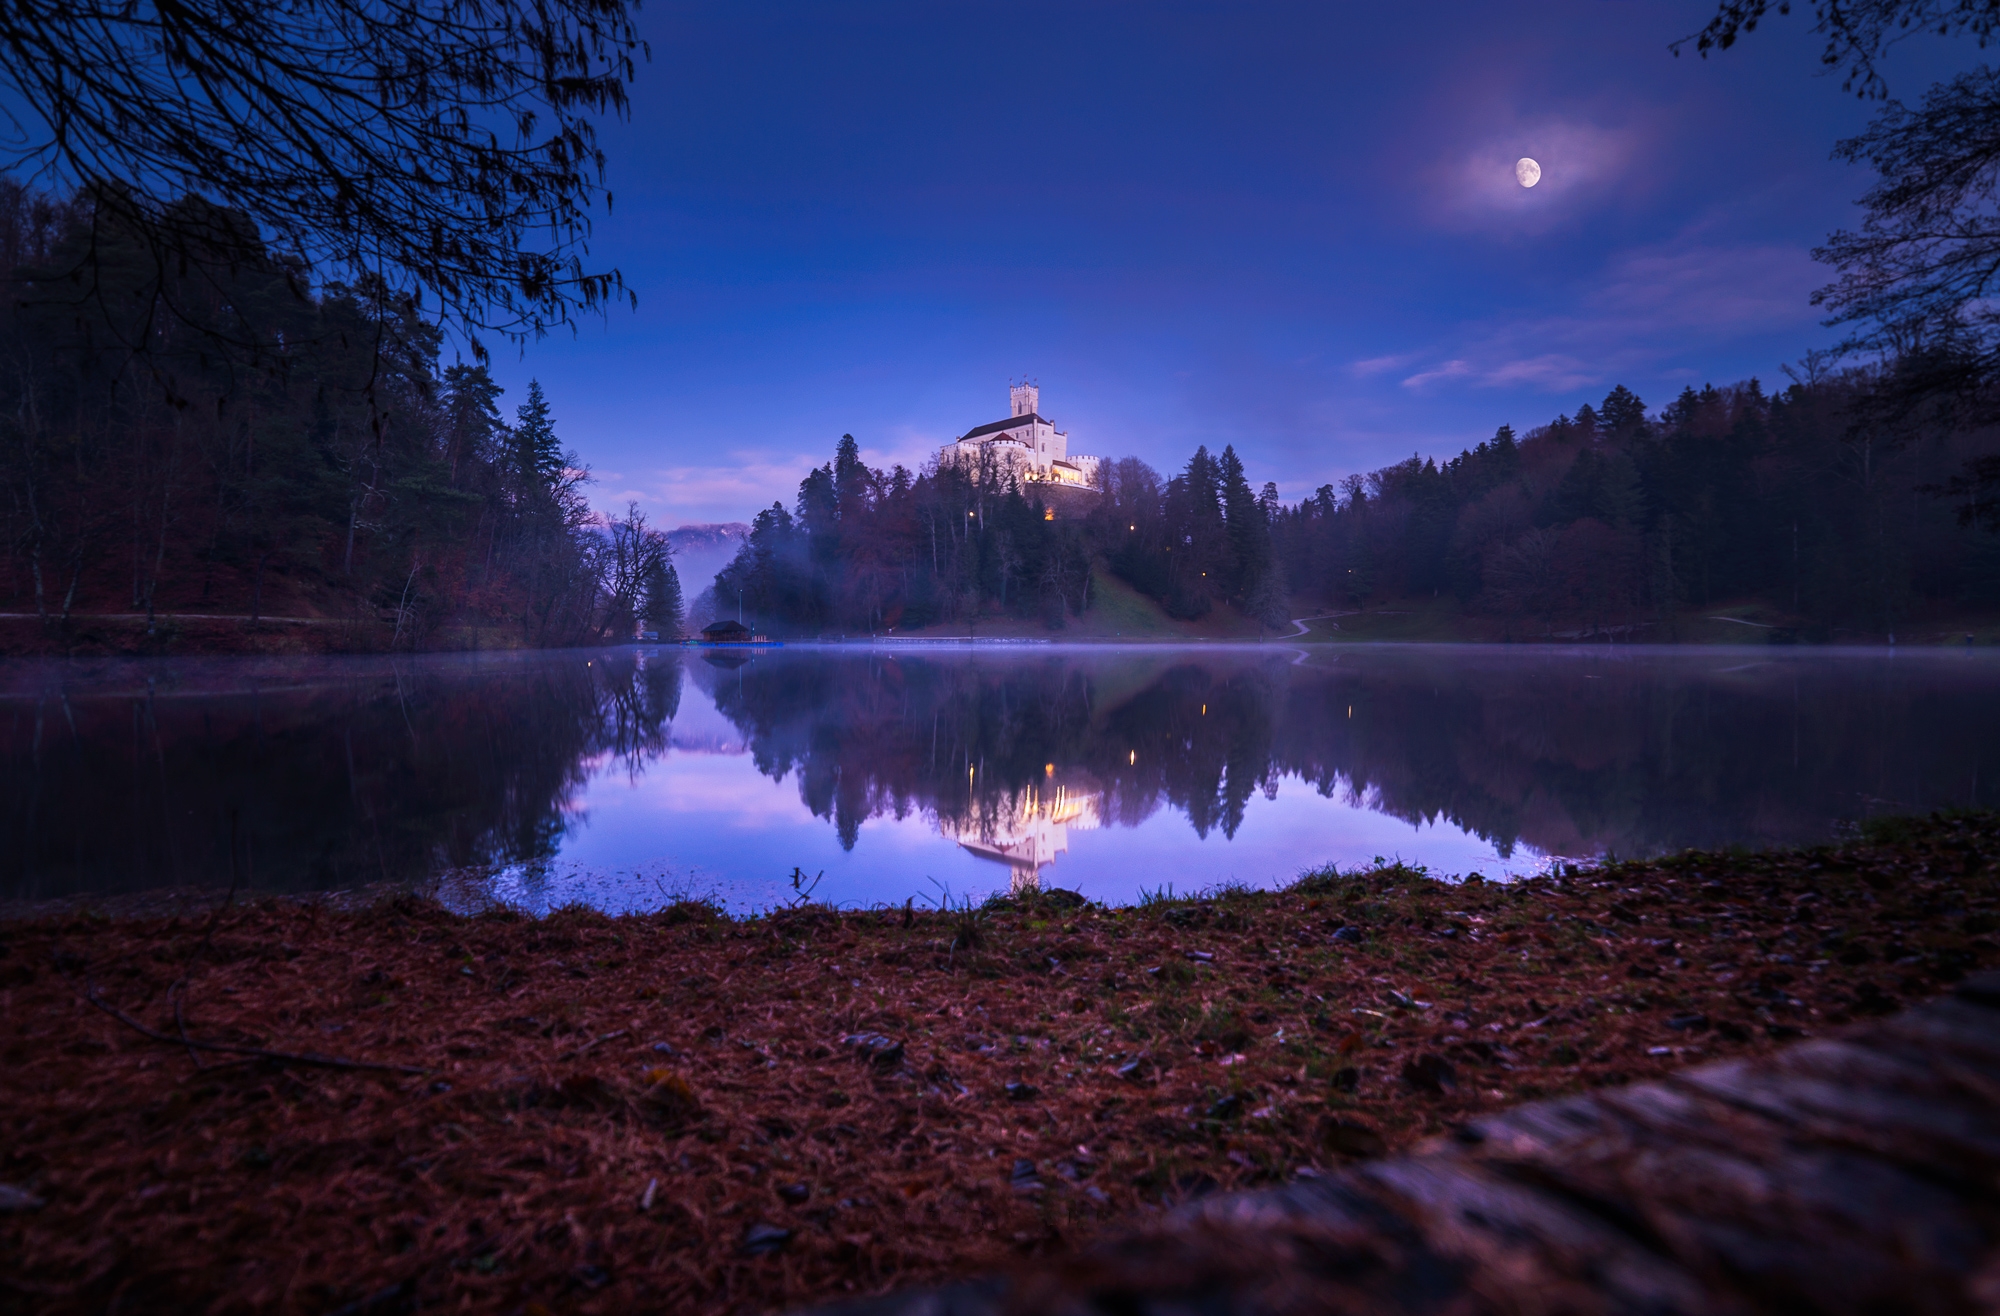 Обои озеро замок Тракошчане ночь - бесплатные картинки на Fonwall